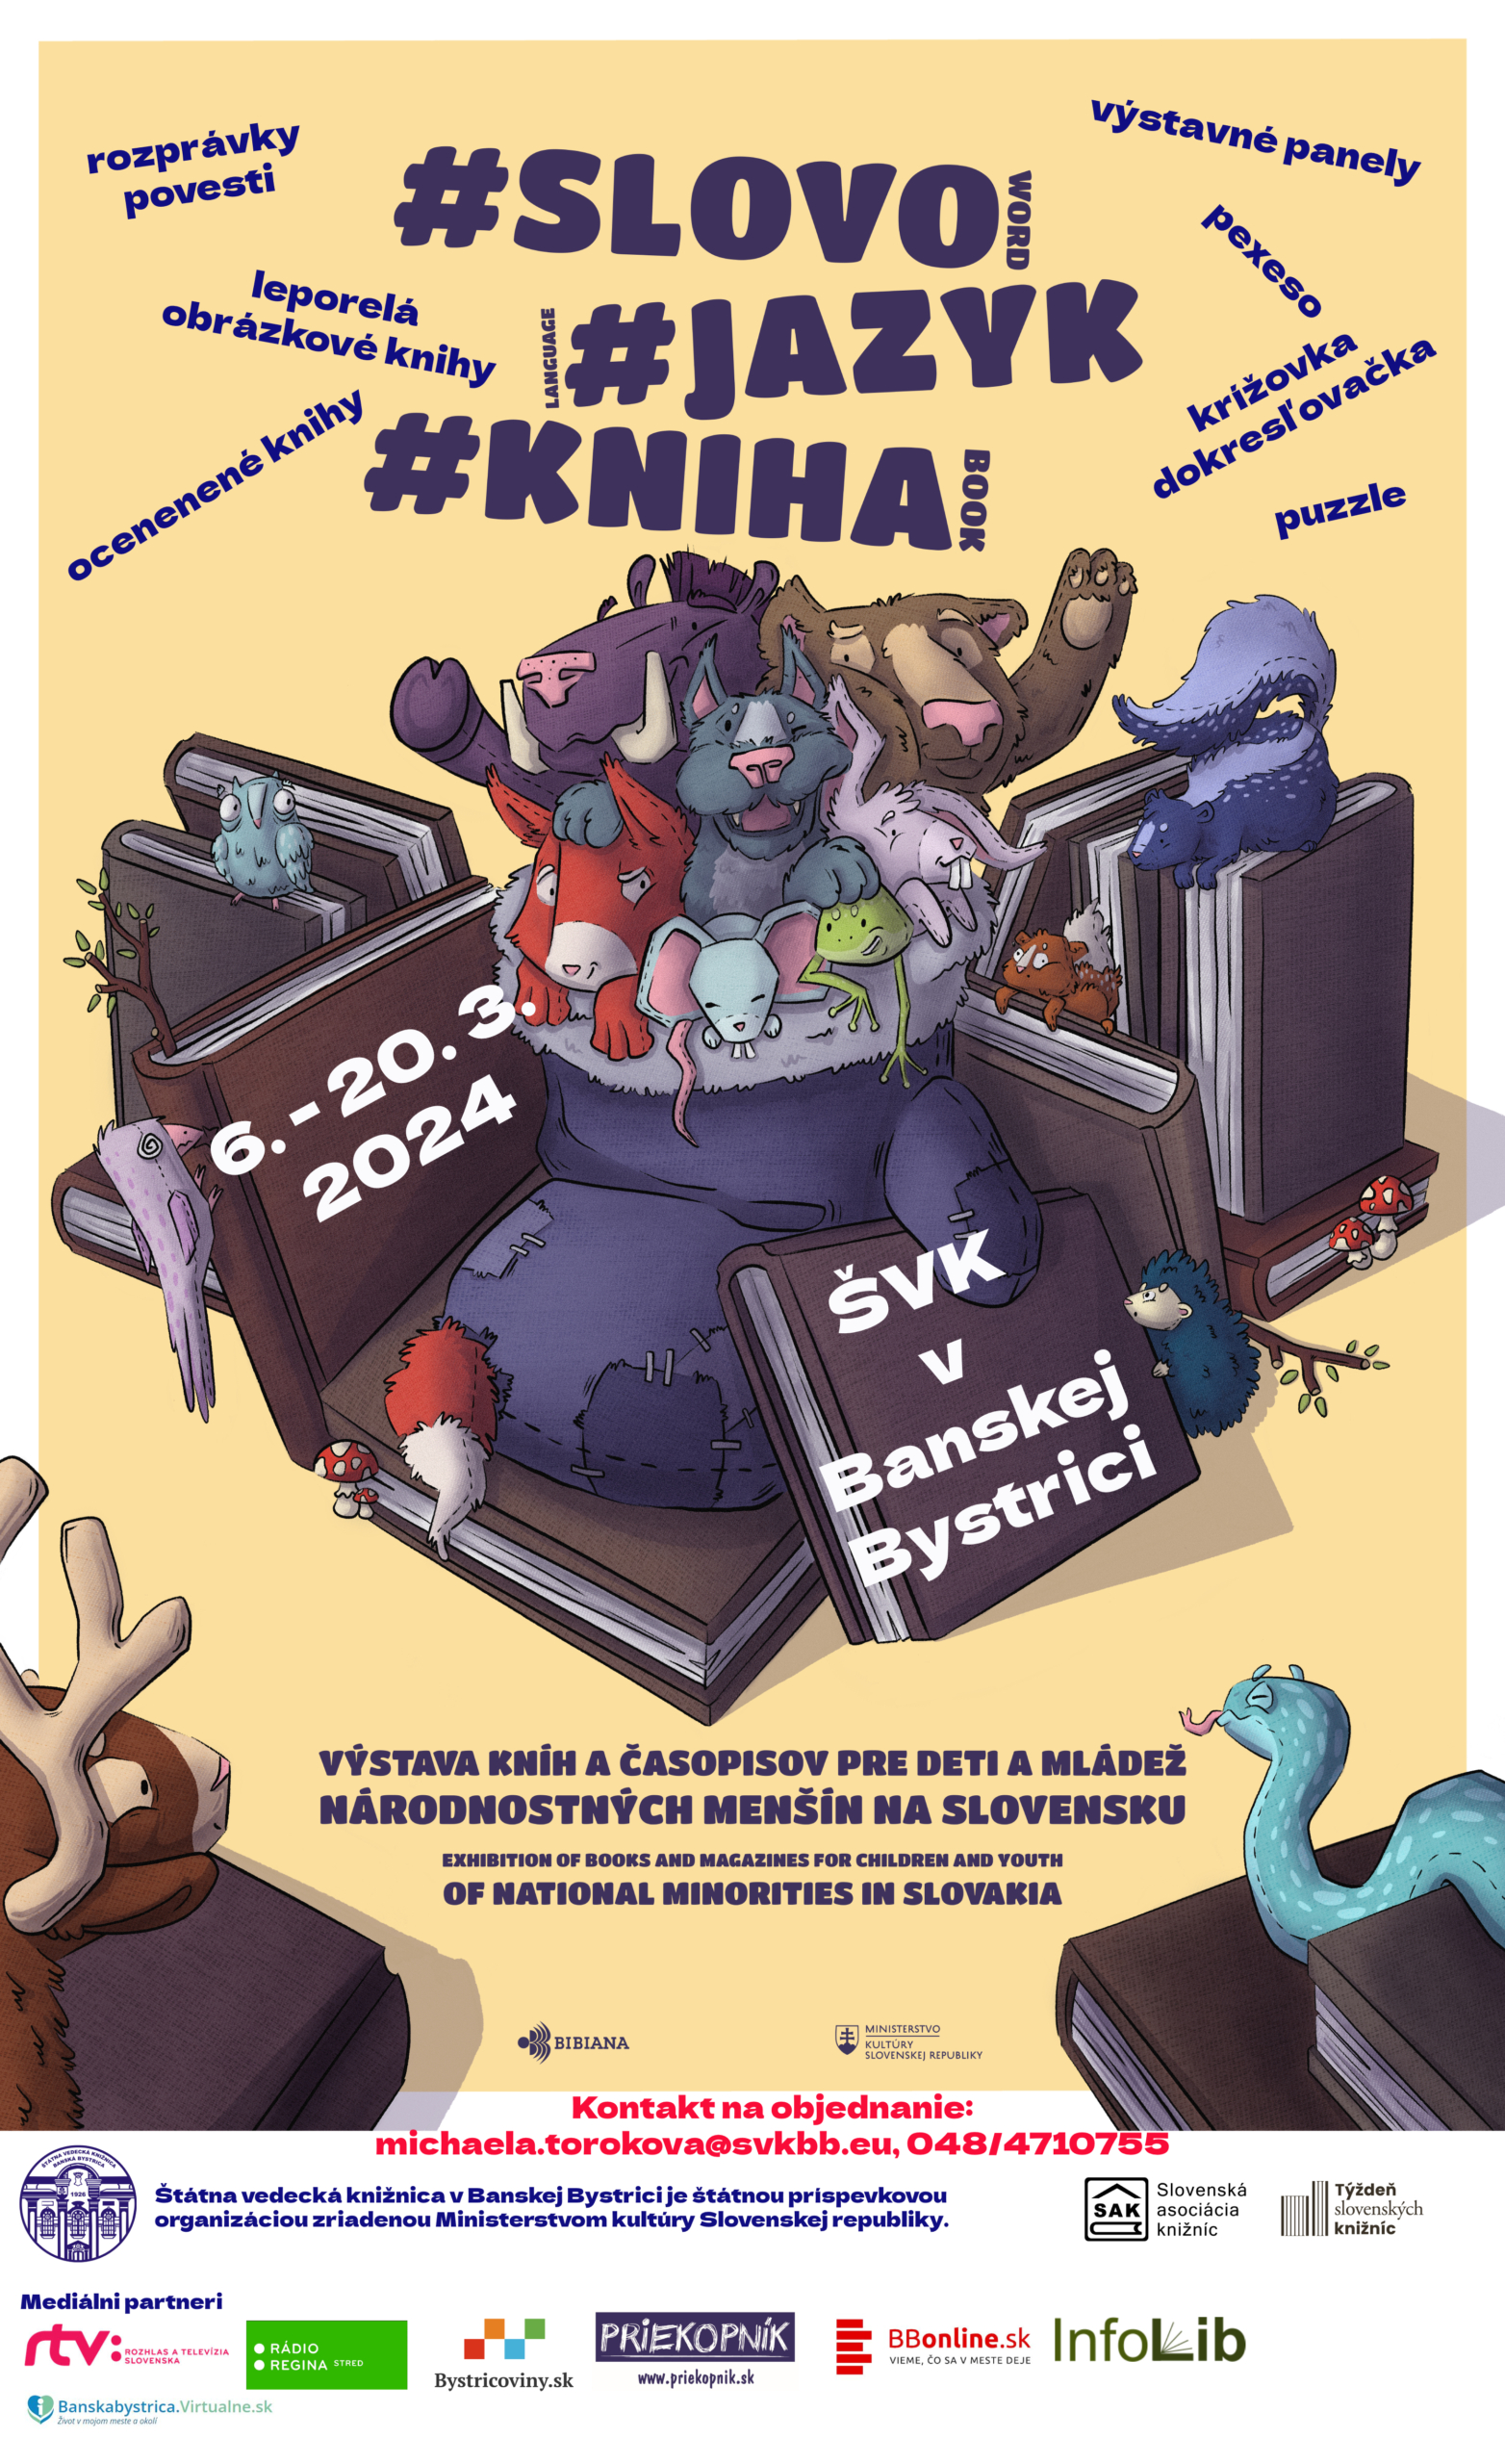 Pozvánka na výstavu kníh a časopisov pre deti a mládež národnostných menšín na Slovensku